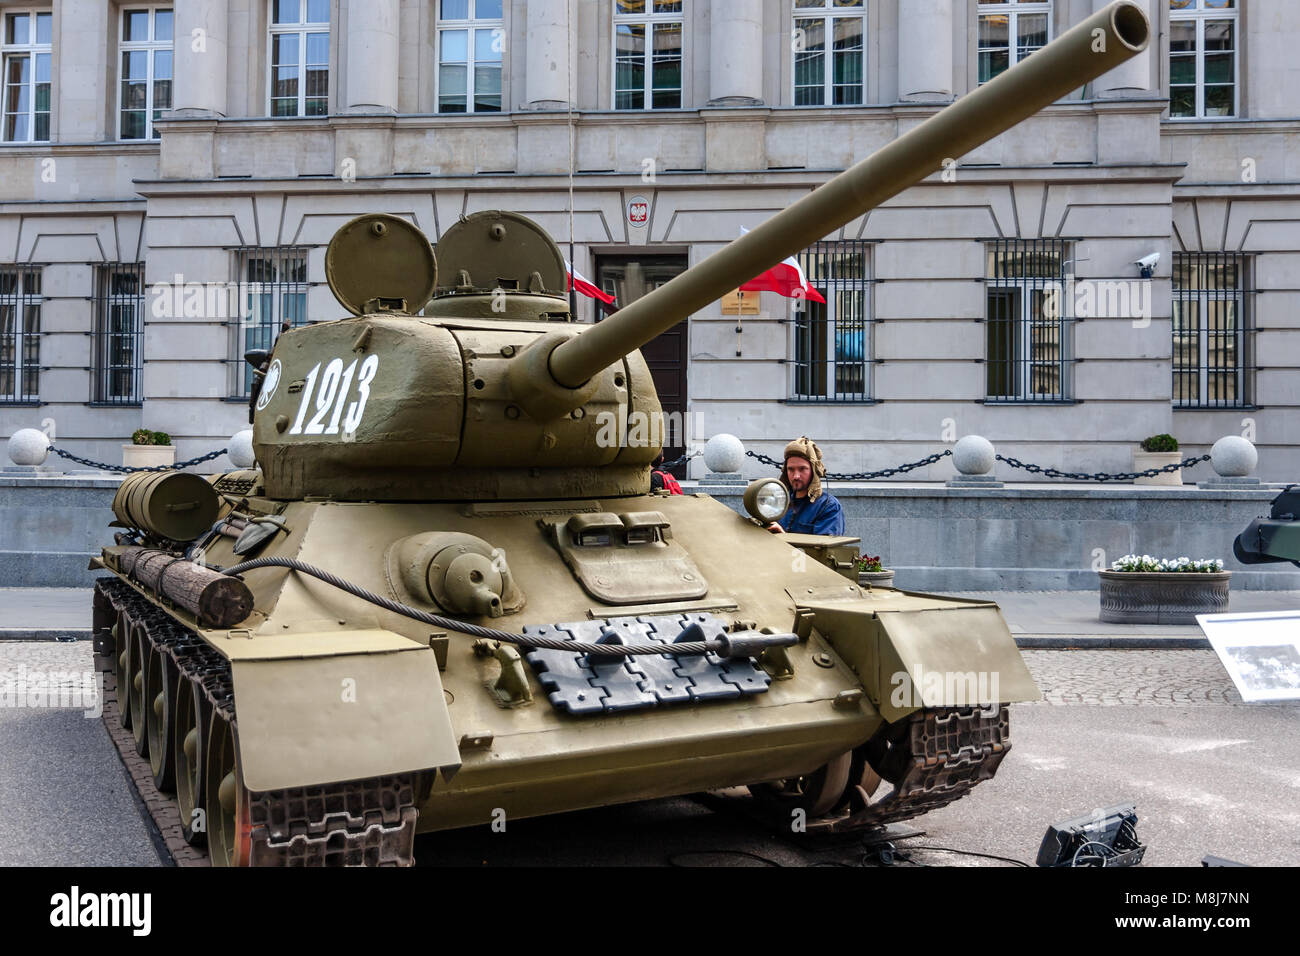 85 sowjetischer Panzer T-34, Version mit größeren 85-mm-Kanone. Die meisten hergestellten Tank des Zweiten Weltkrieges. Öffentliche feiern. Warschau, Polen - Mai 08, 2015 Stockfoto